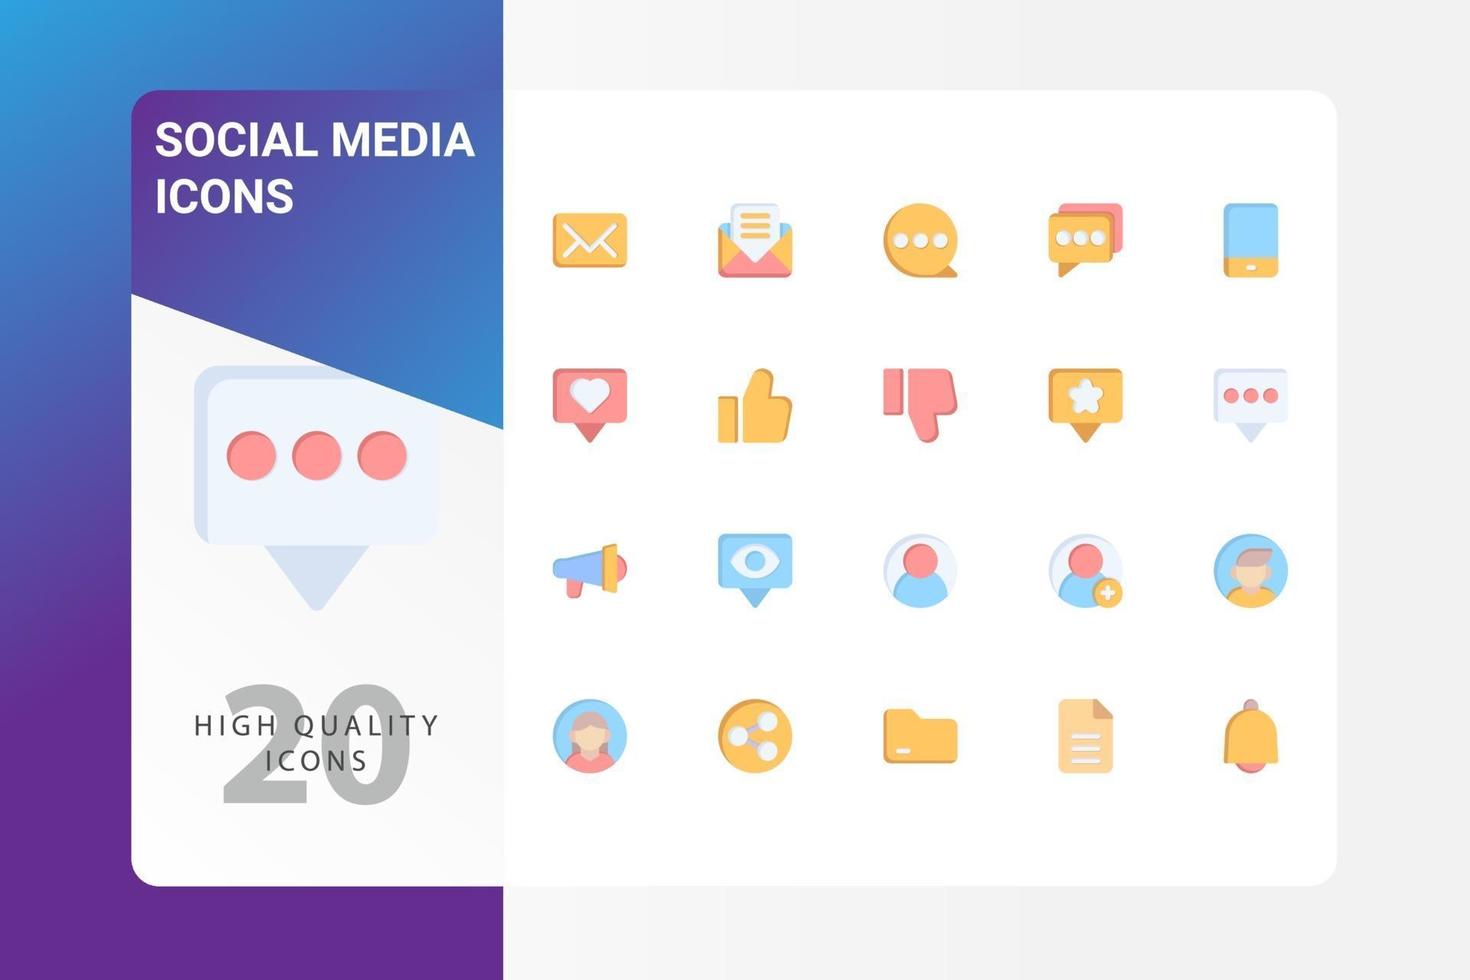 social media icon pack geïsoleerd op een witte achtergrond. voor uw websiteontwerp, logo, app, ui. vectorafbeeldingen illustratie en bewerkbare beroerte. eps 10. vector